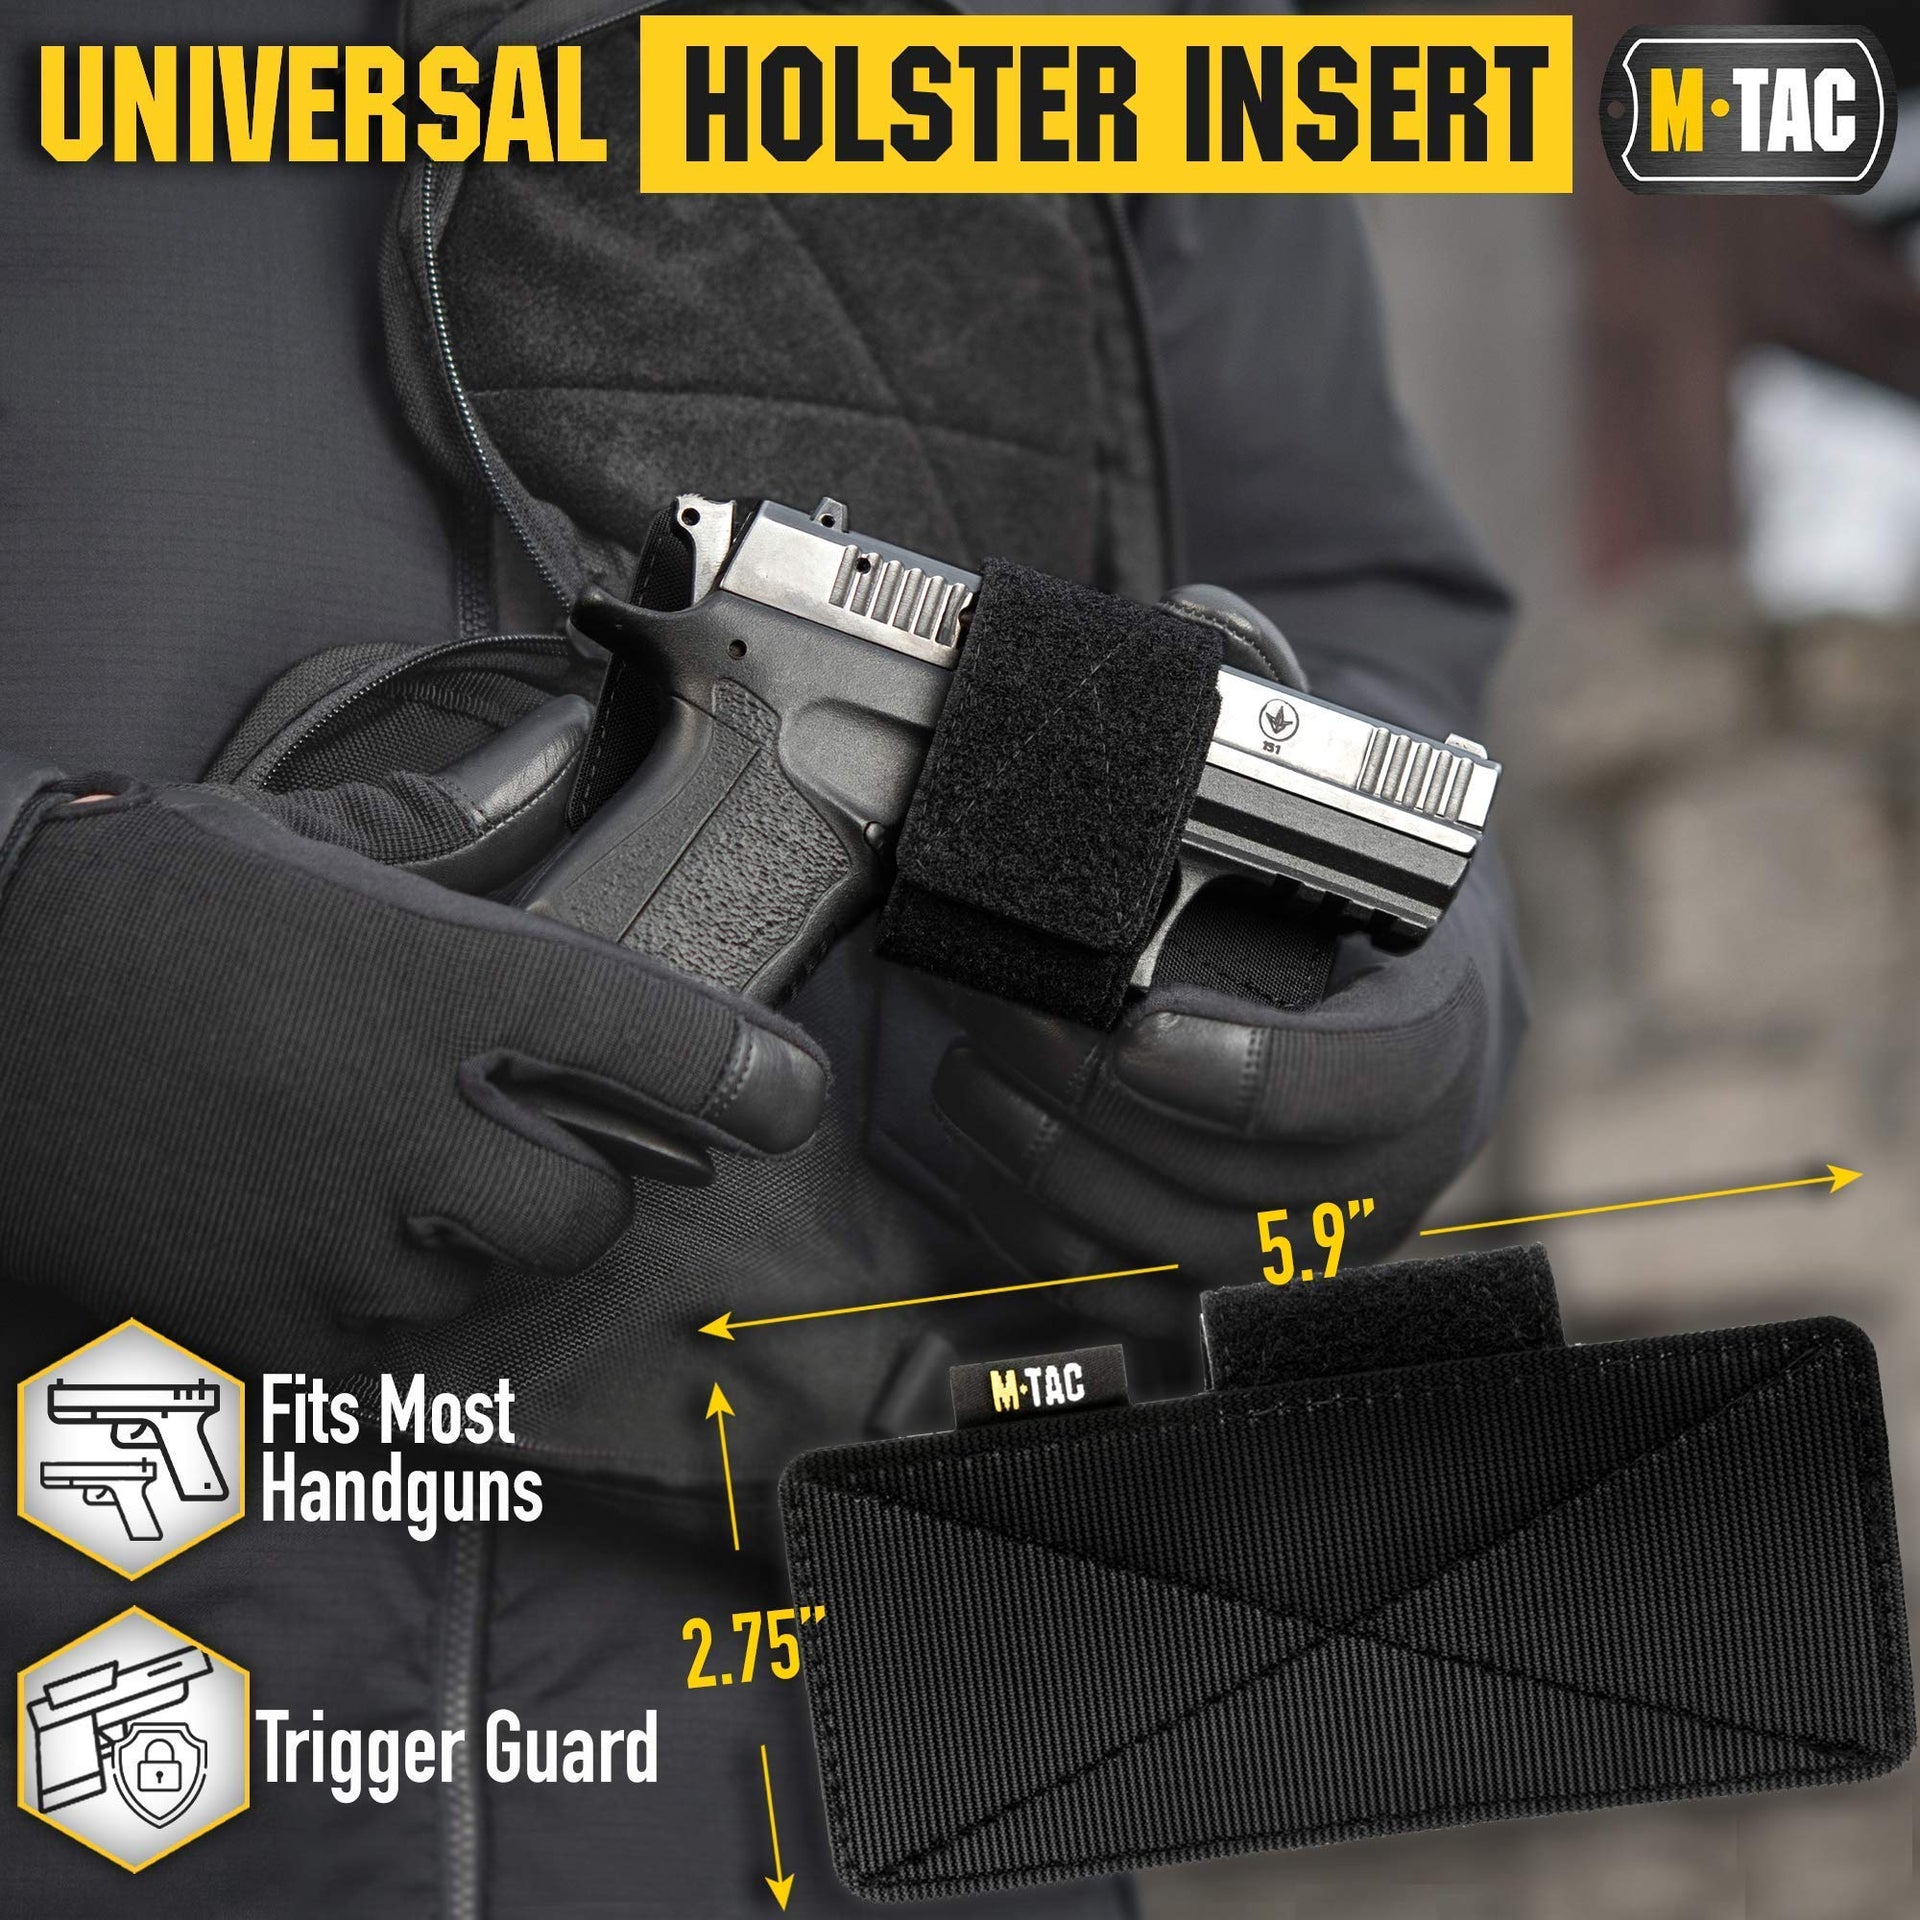 Pistol Holder Insert®